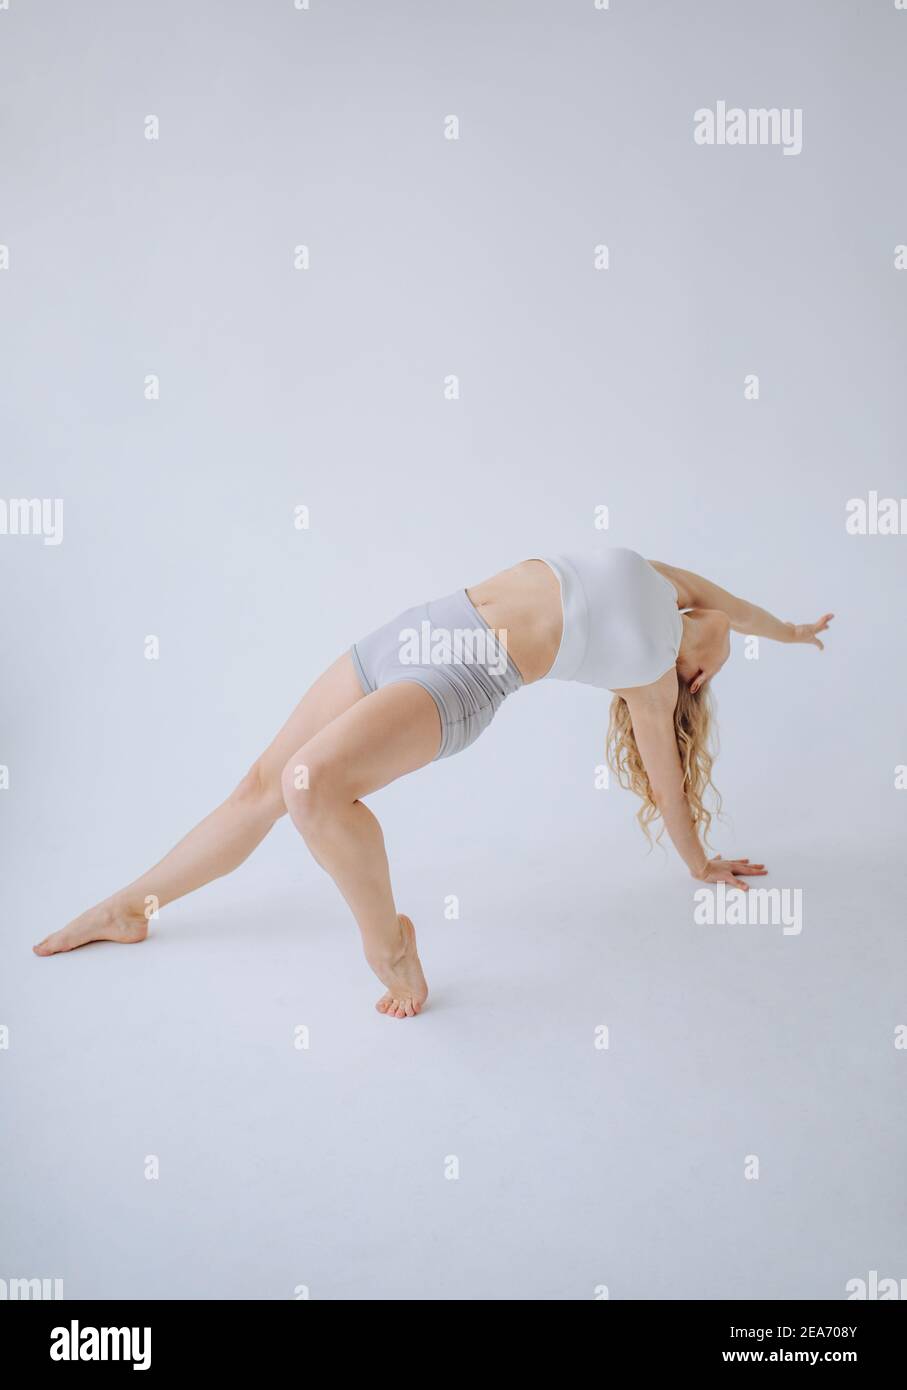 Gimnasta femenina haciendo una curva en la espalda en un estudio Foto de stock